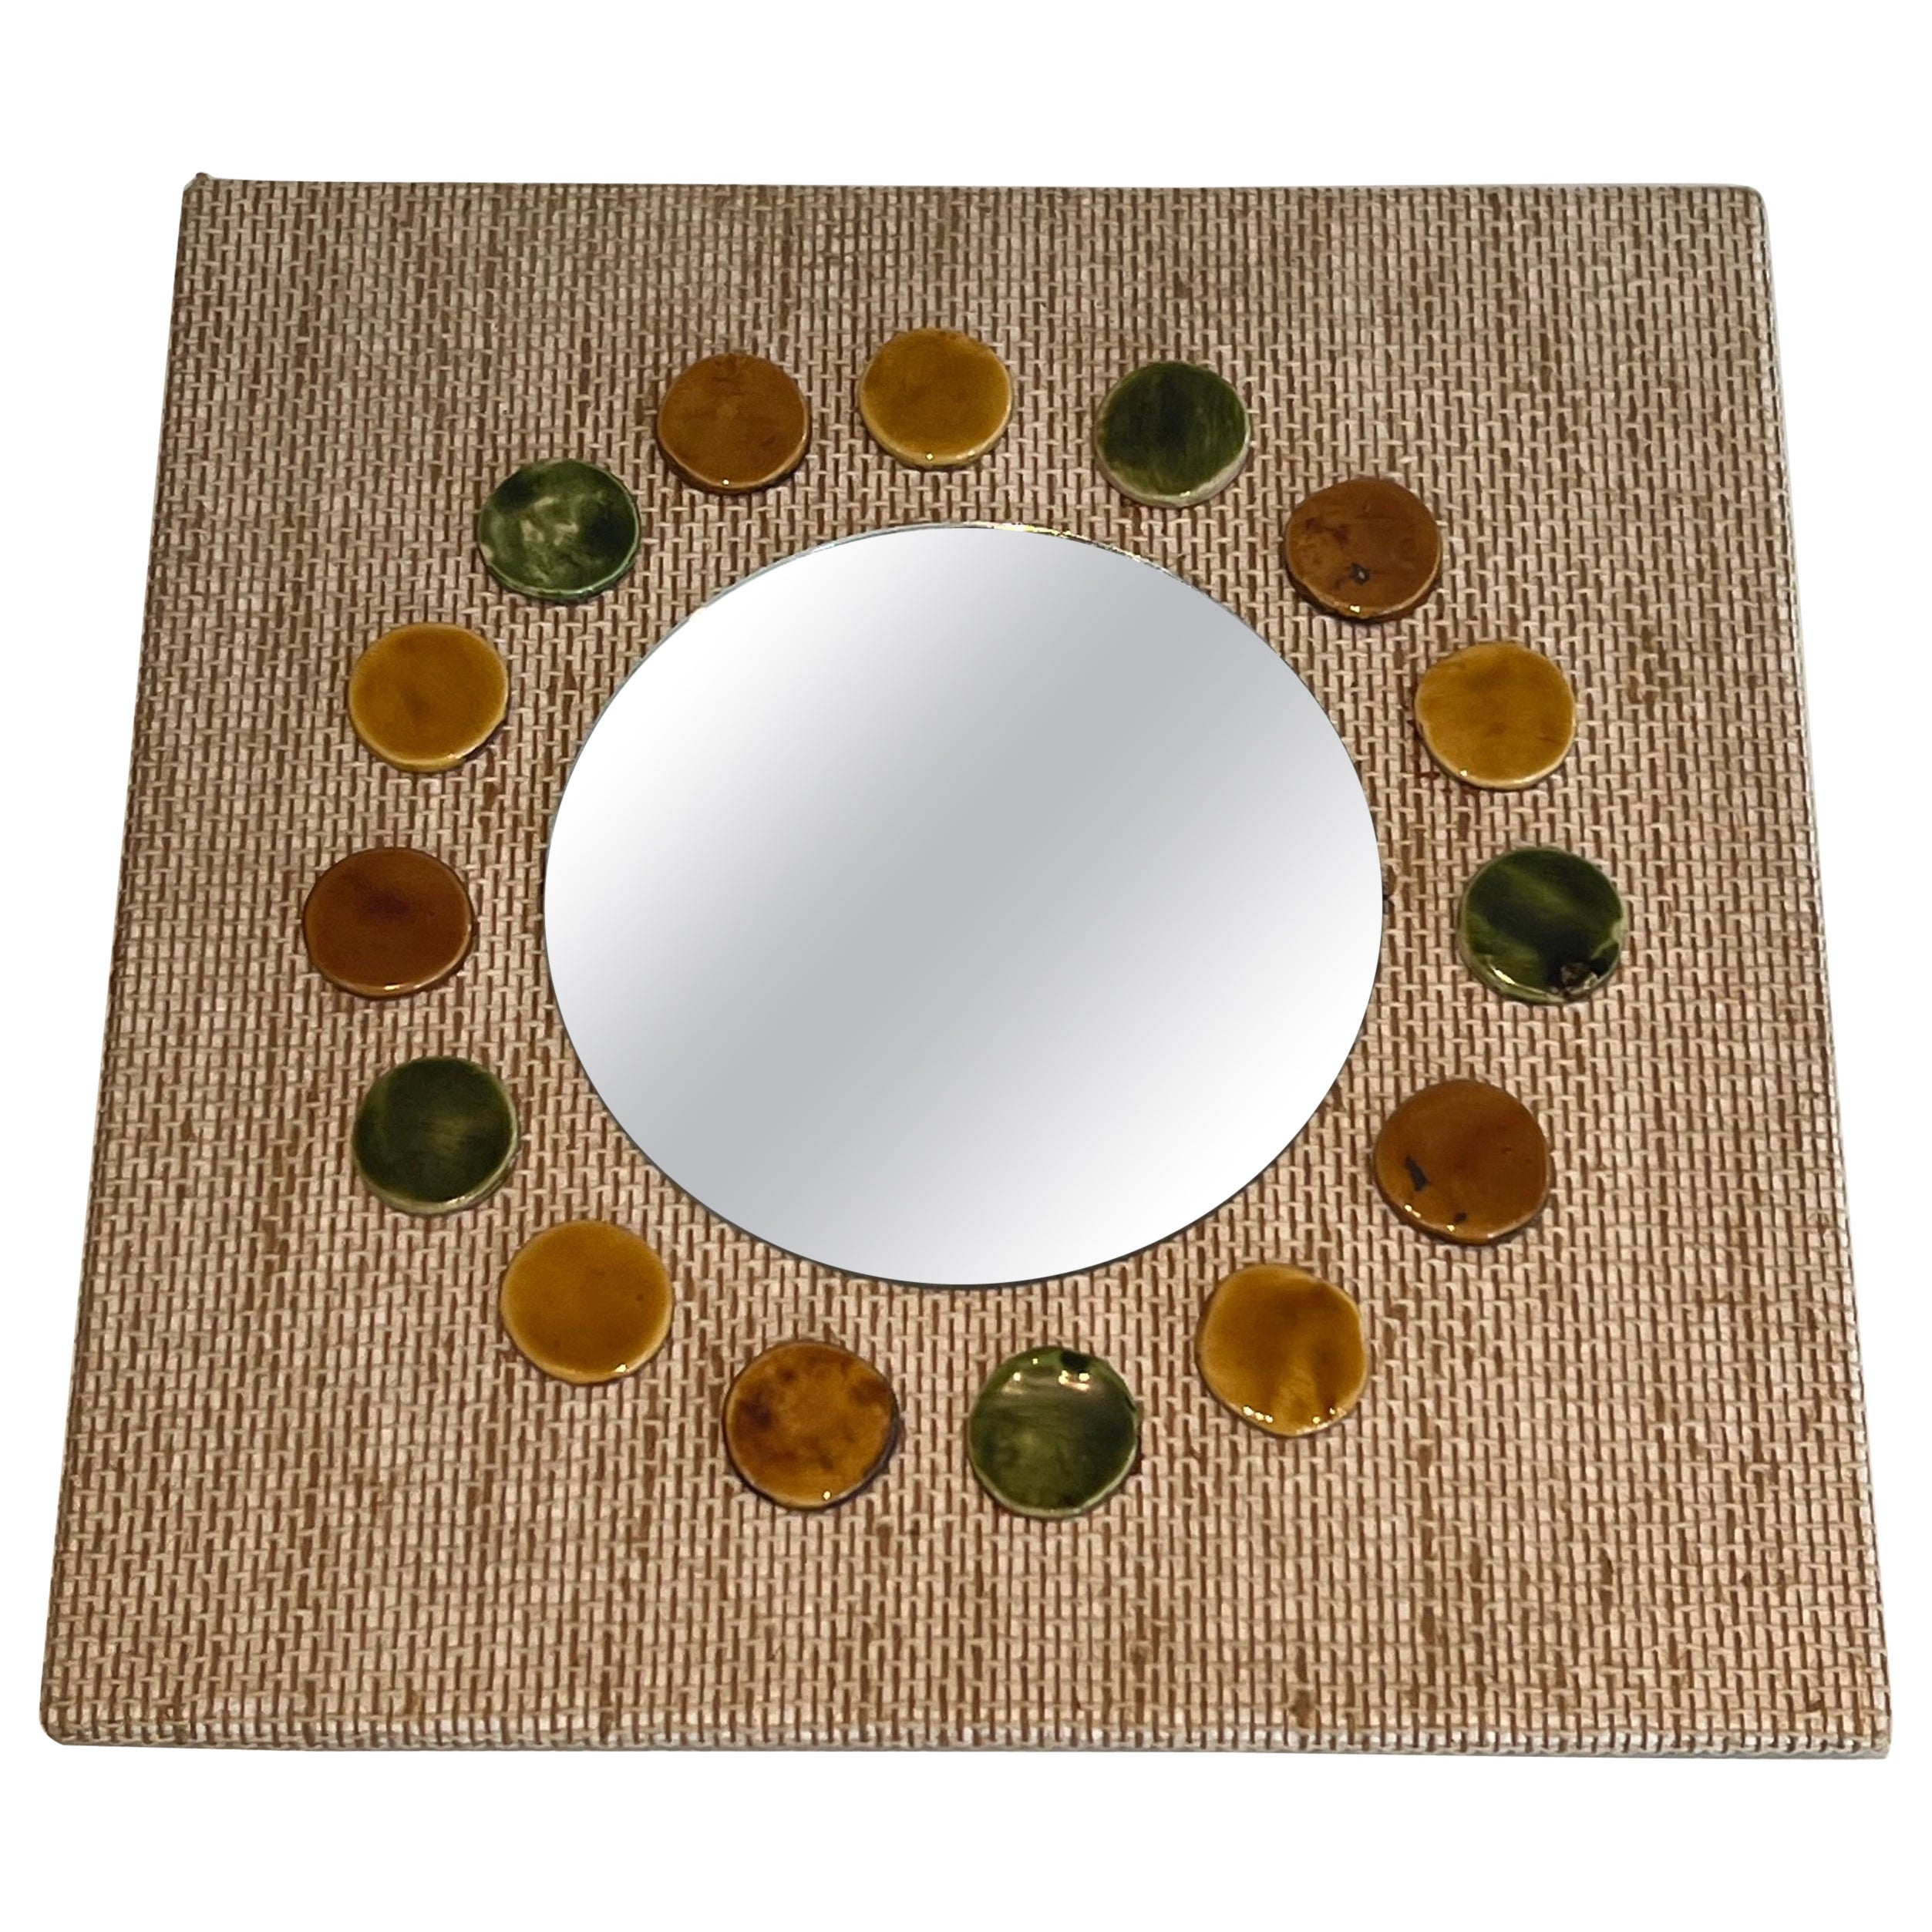 Kleiner quadratischer Spiegel aus Bast und farbigen runden Keramikelementen. 